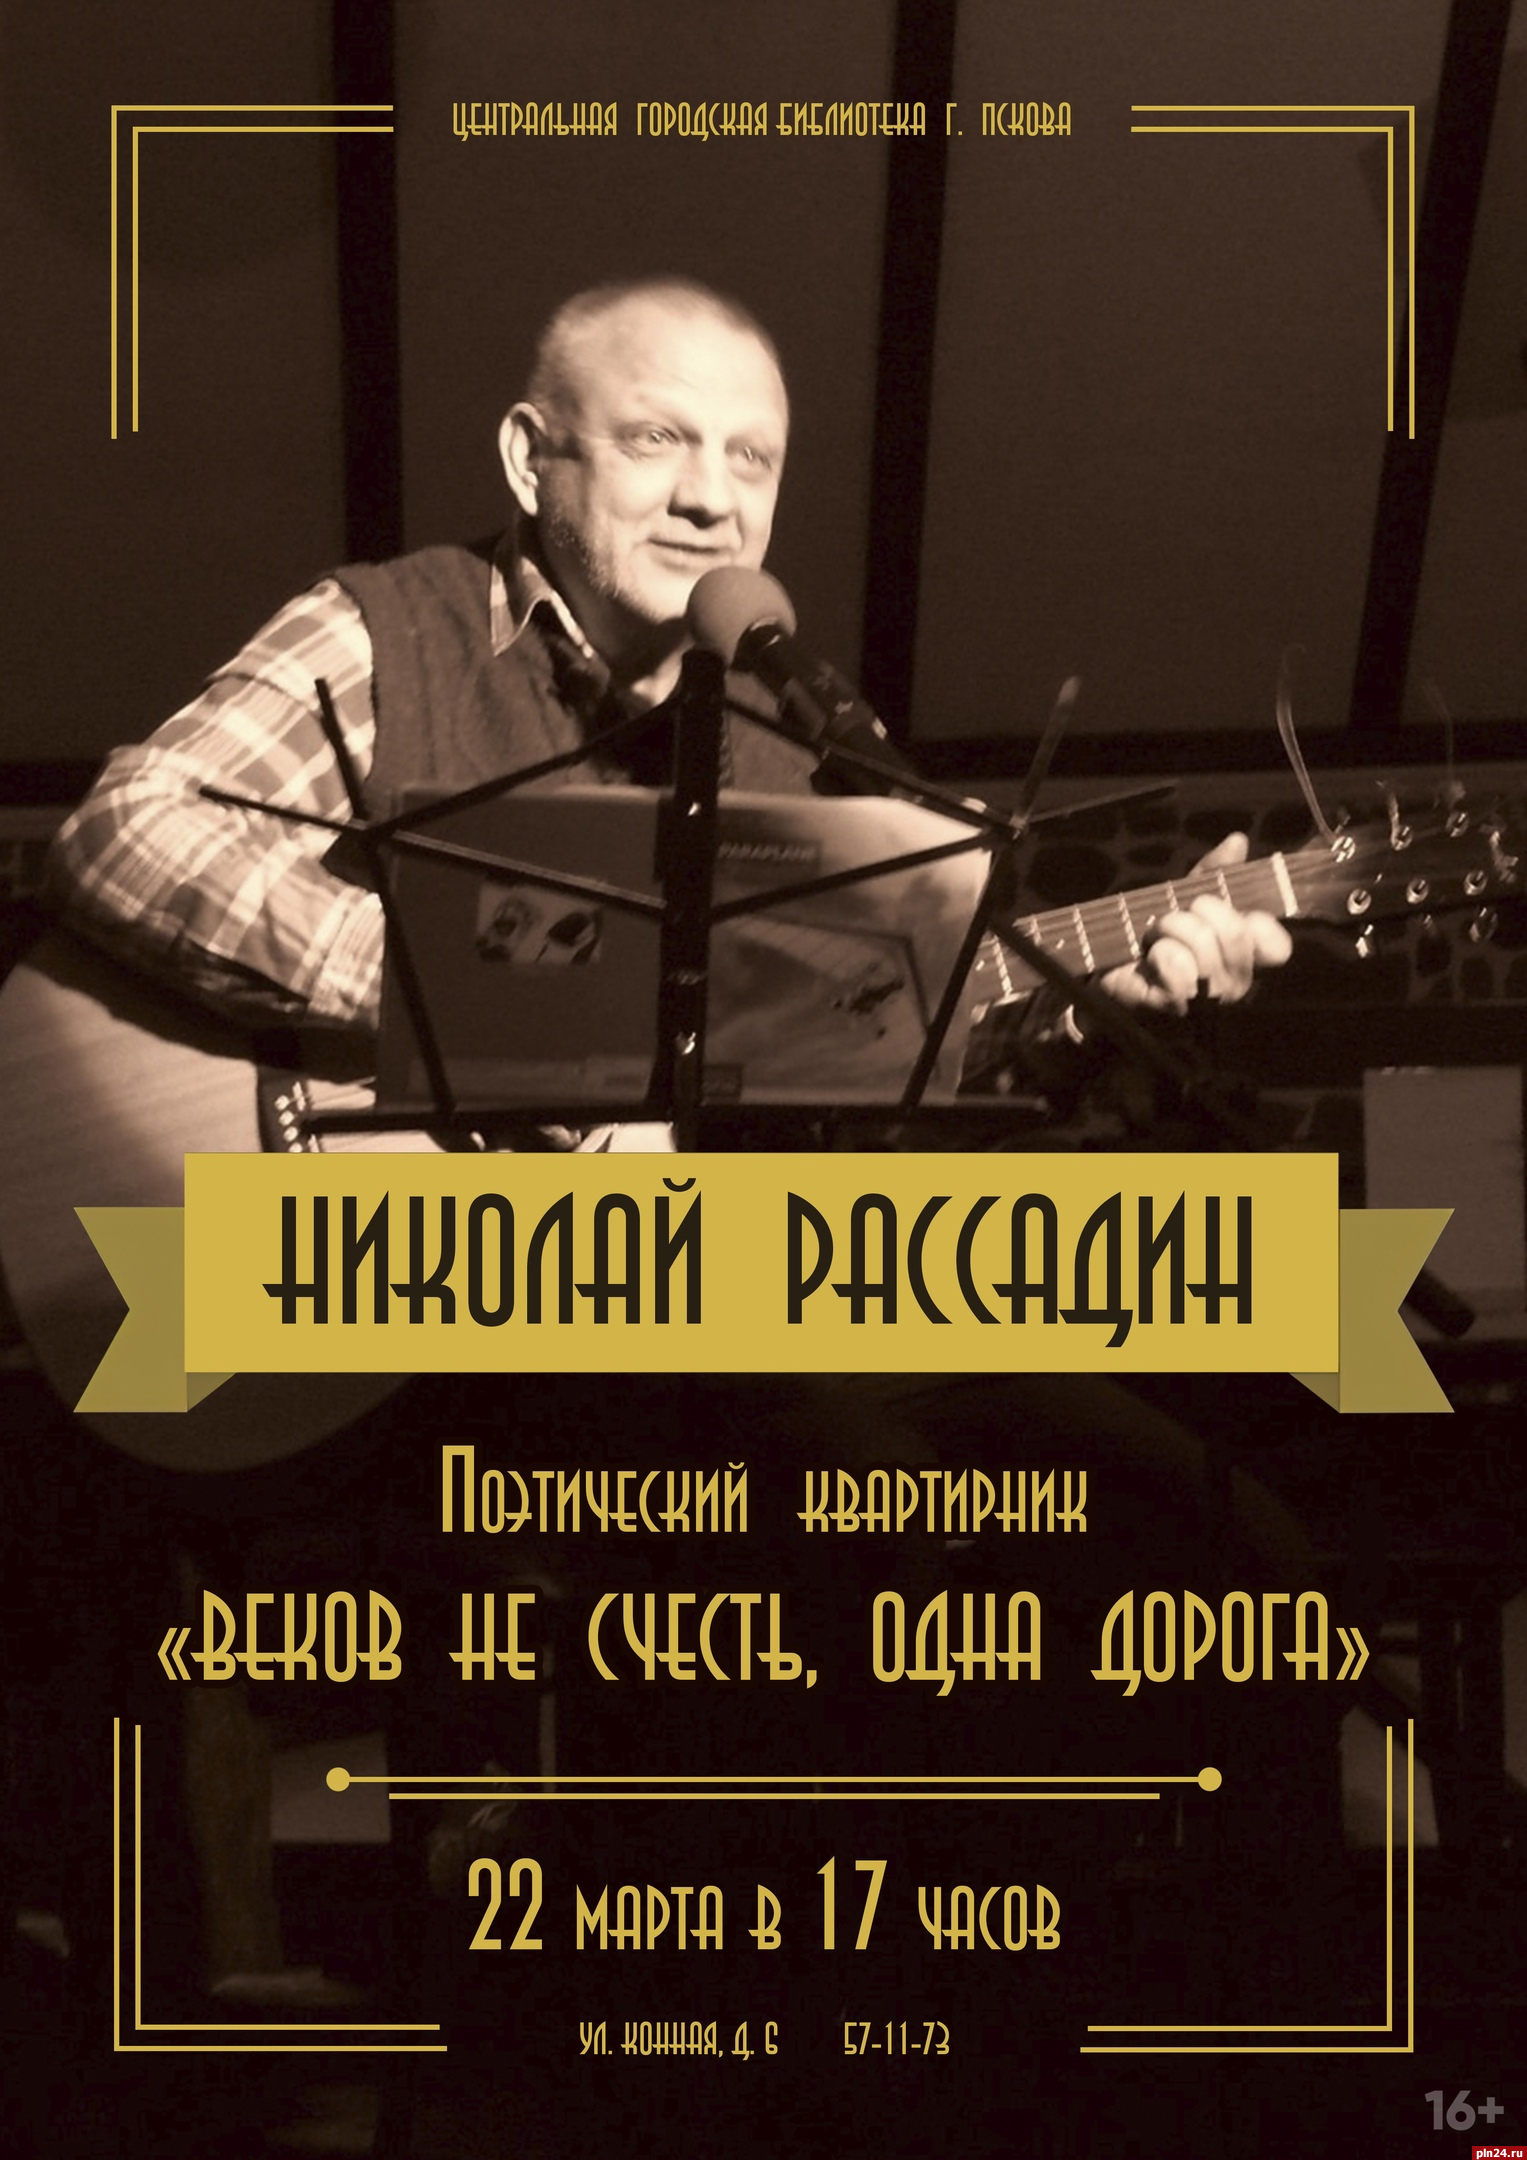 Поэтический квартирник Николая Рассадина состоится в Пскове 22 марта